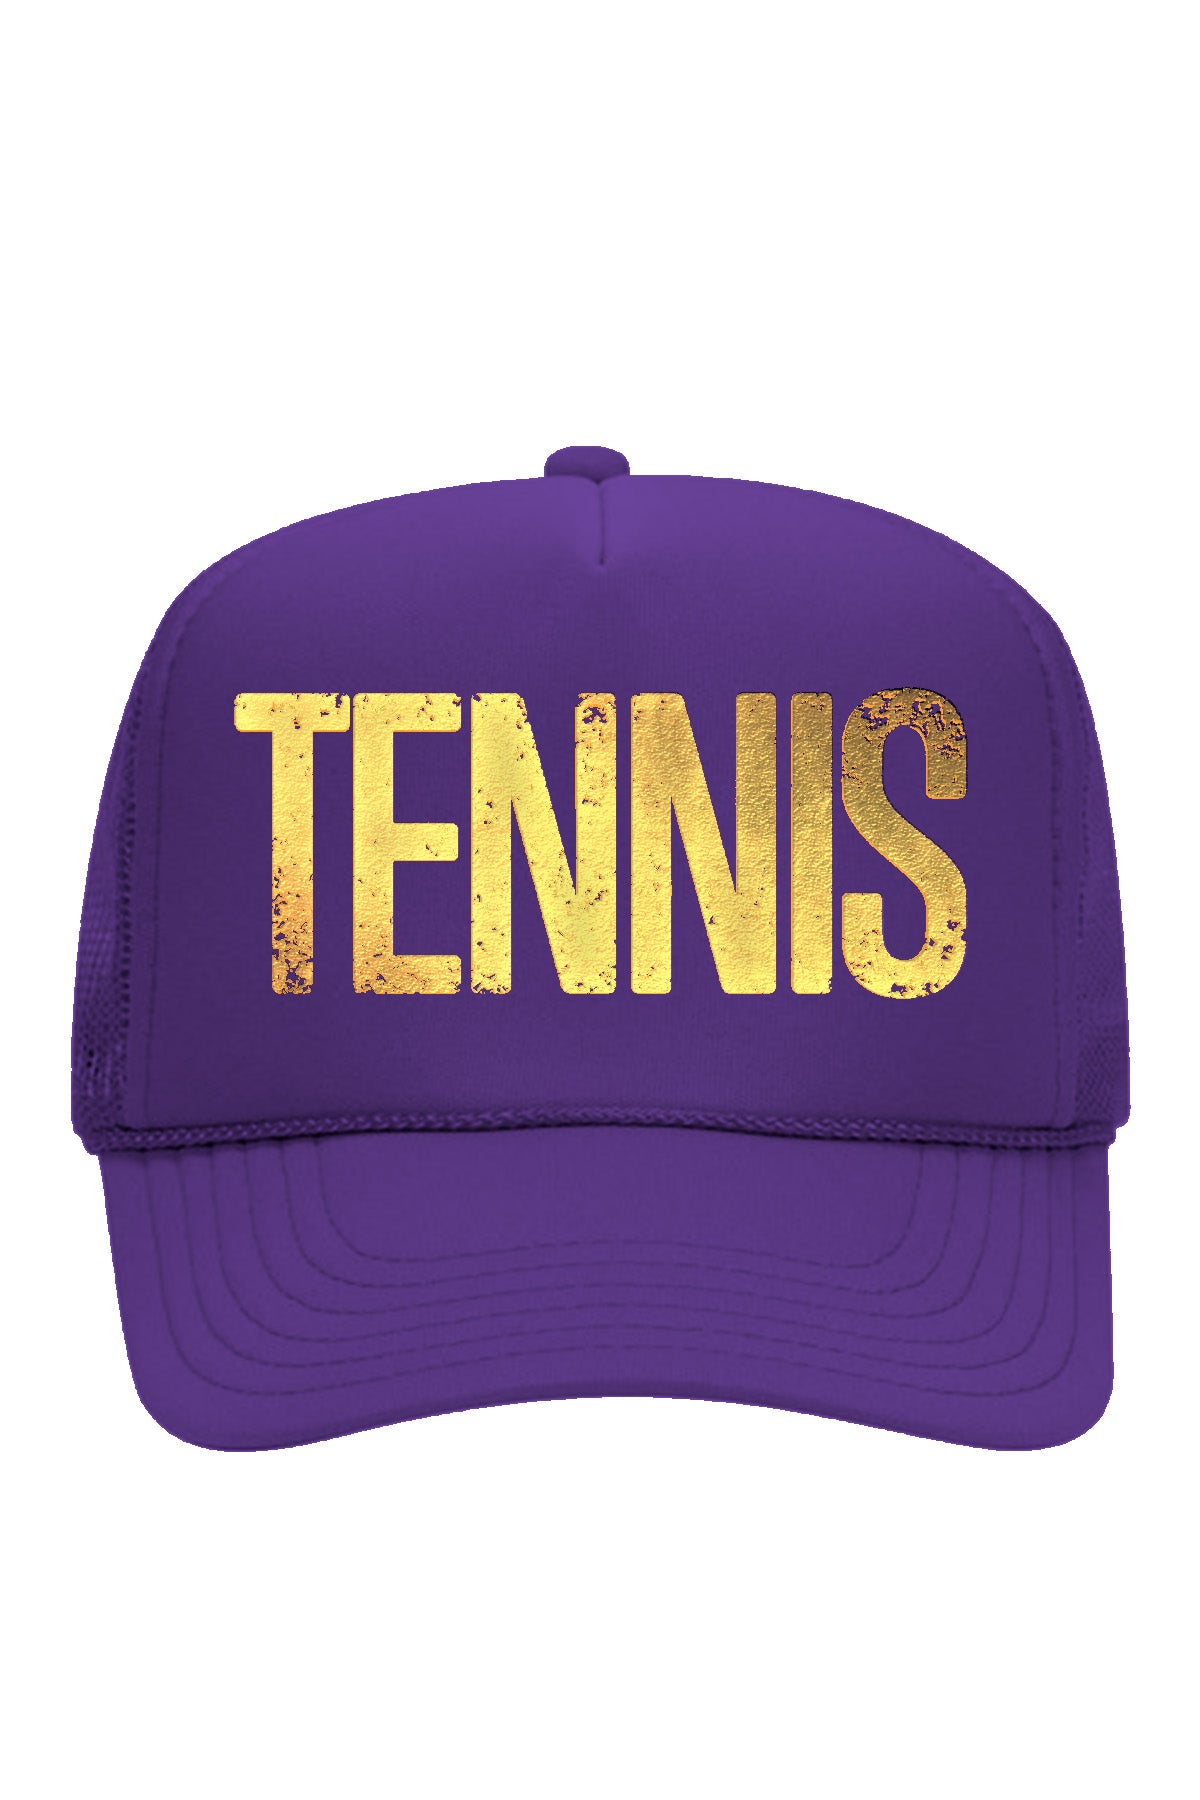 TENNIS IS GOLDEN Trucker Hat